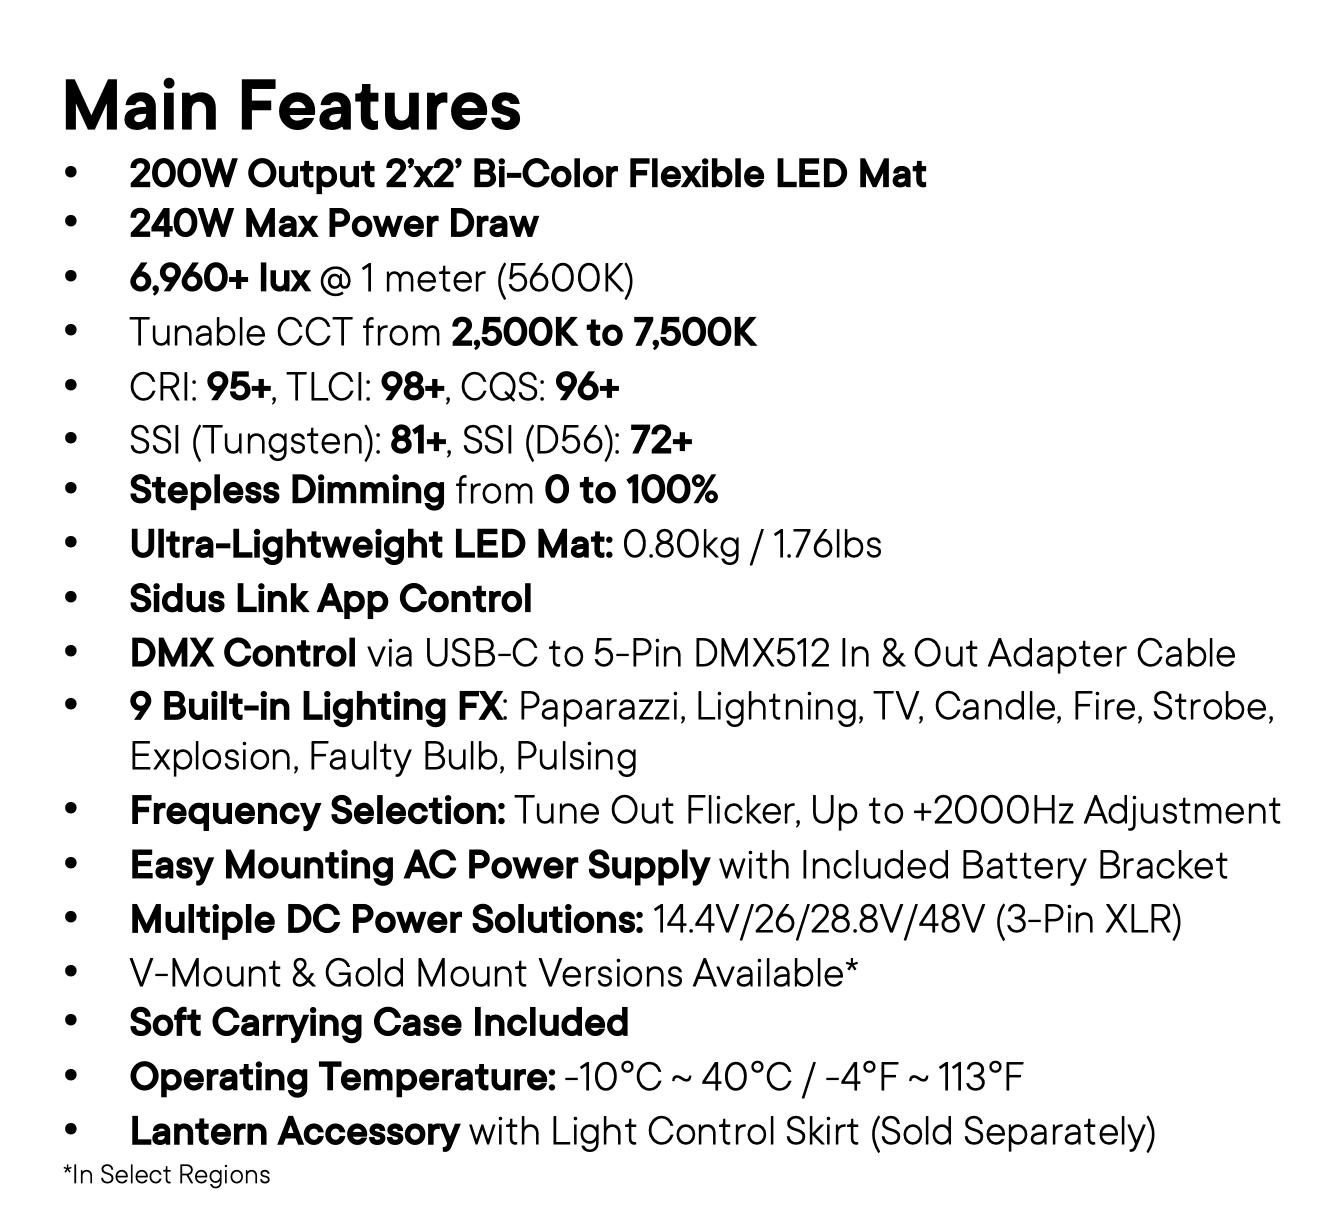 Amaran F22x Bi-color LED mat features